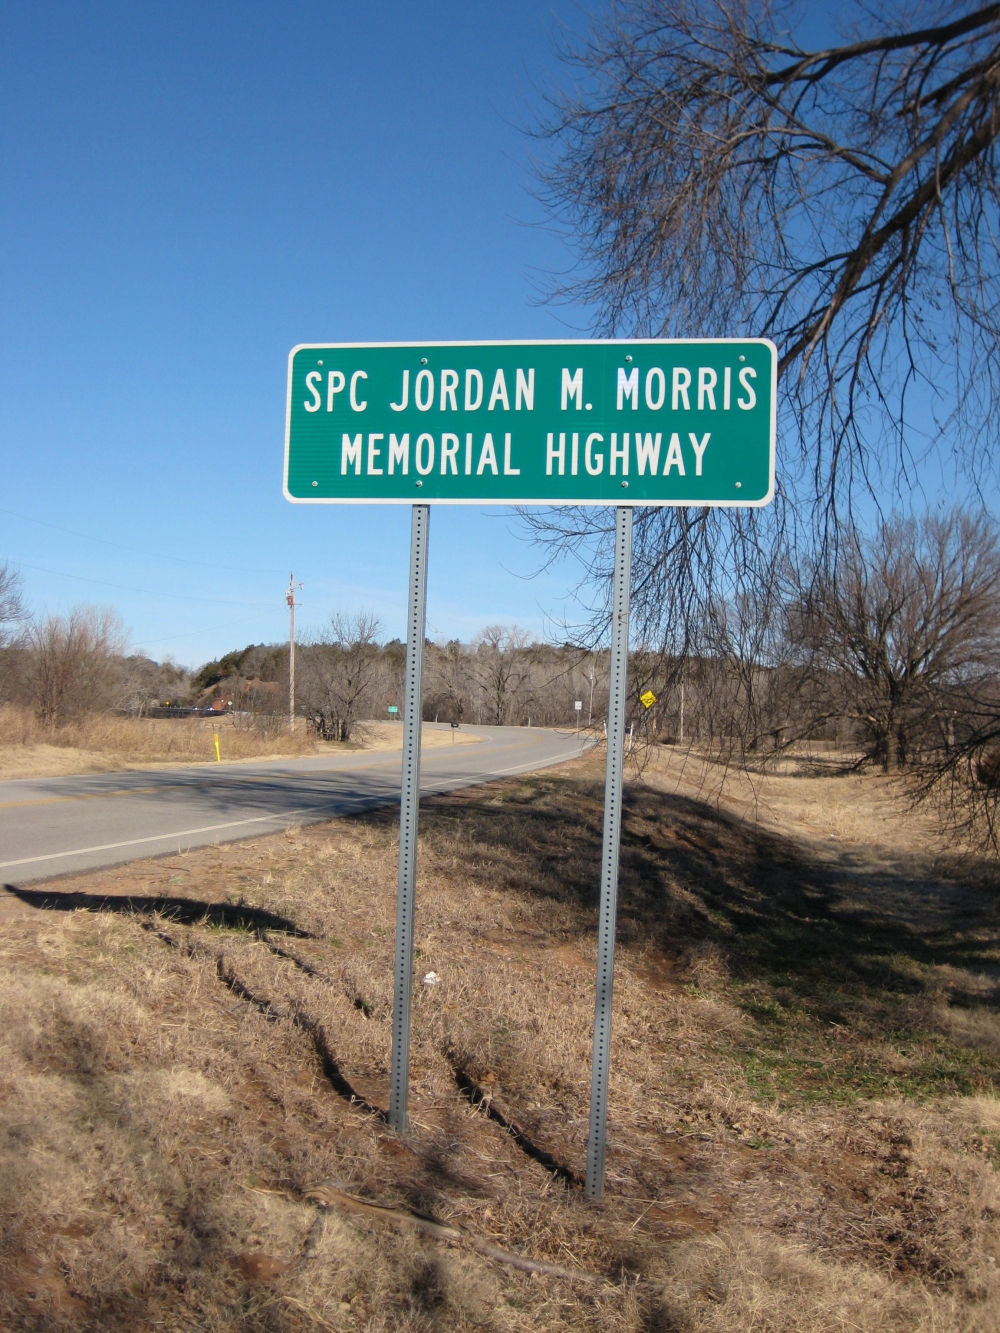 SPC Jordan M. Morris Memorial Highway